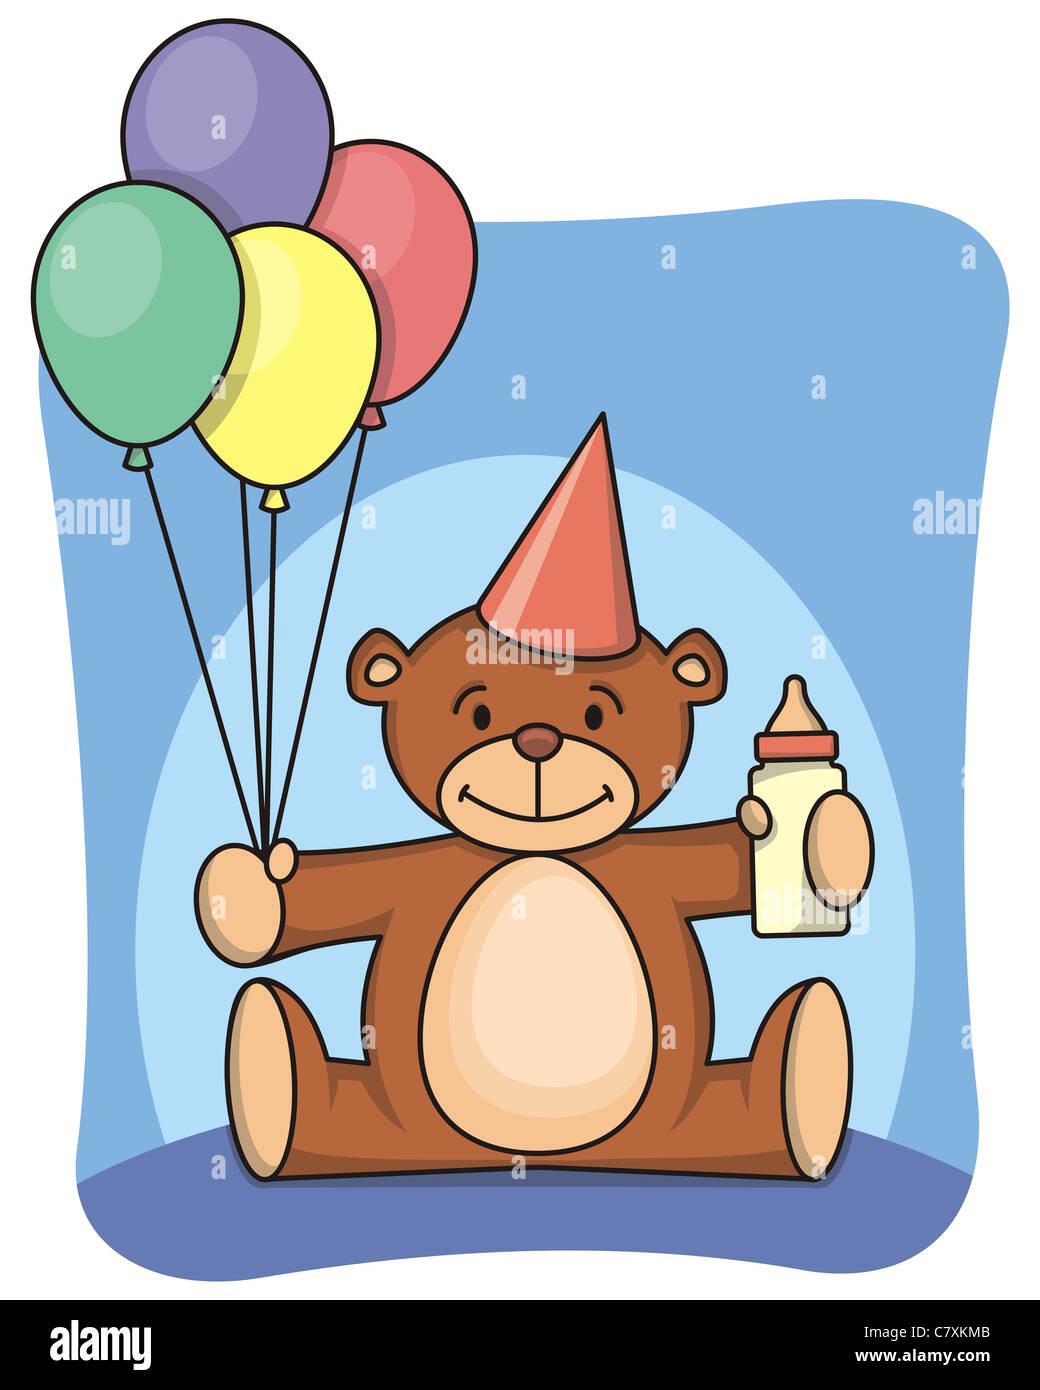 Teddy bear celebrating 1st birthday. Stock Photo